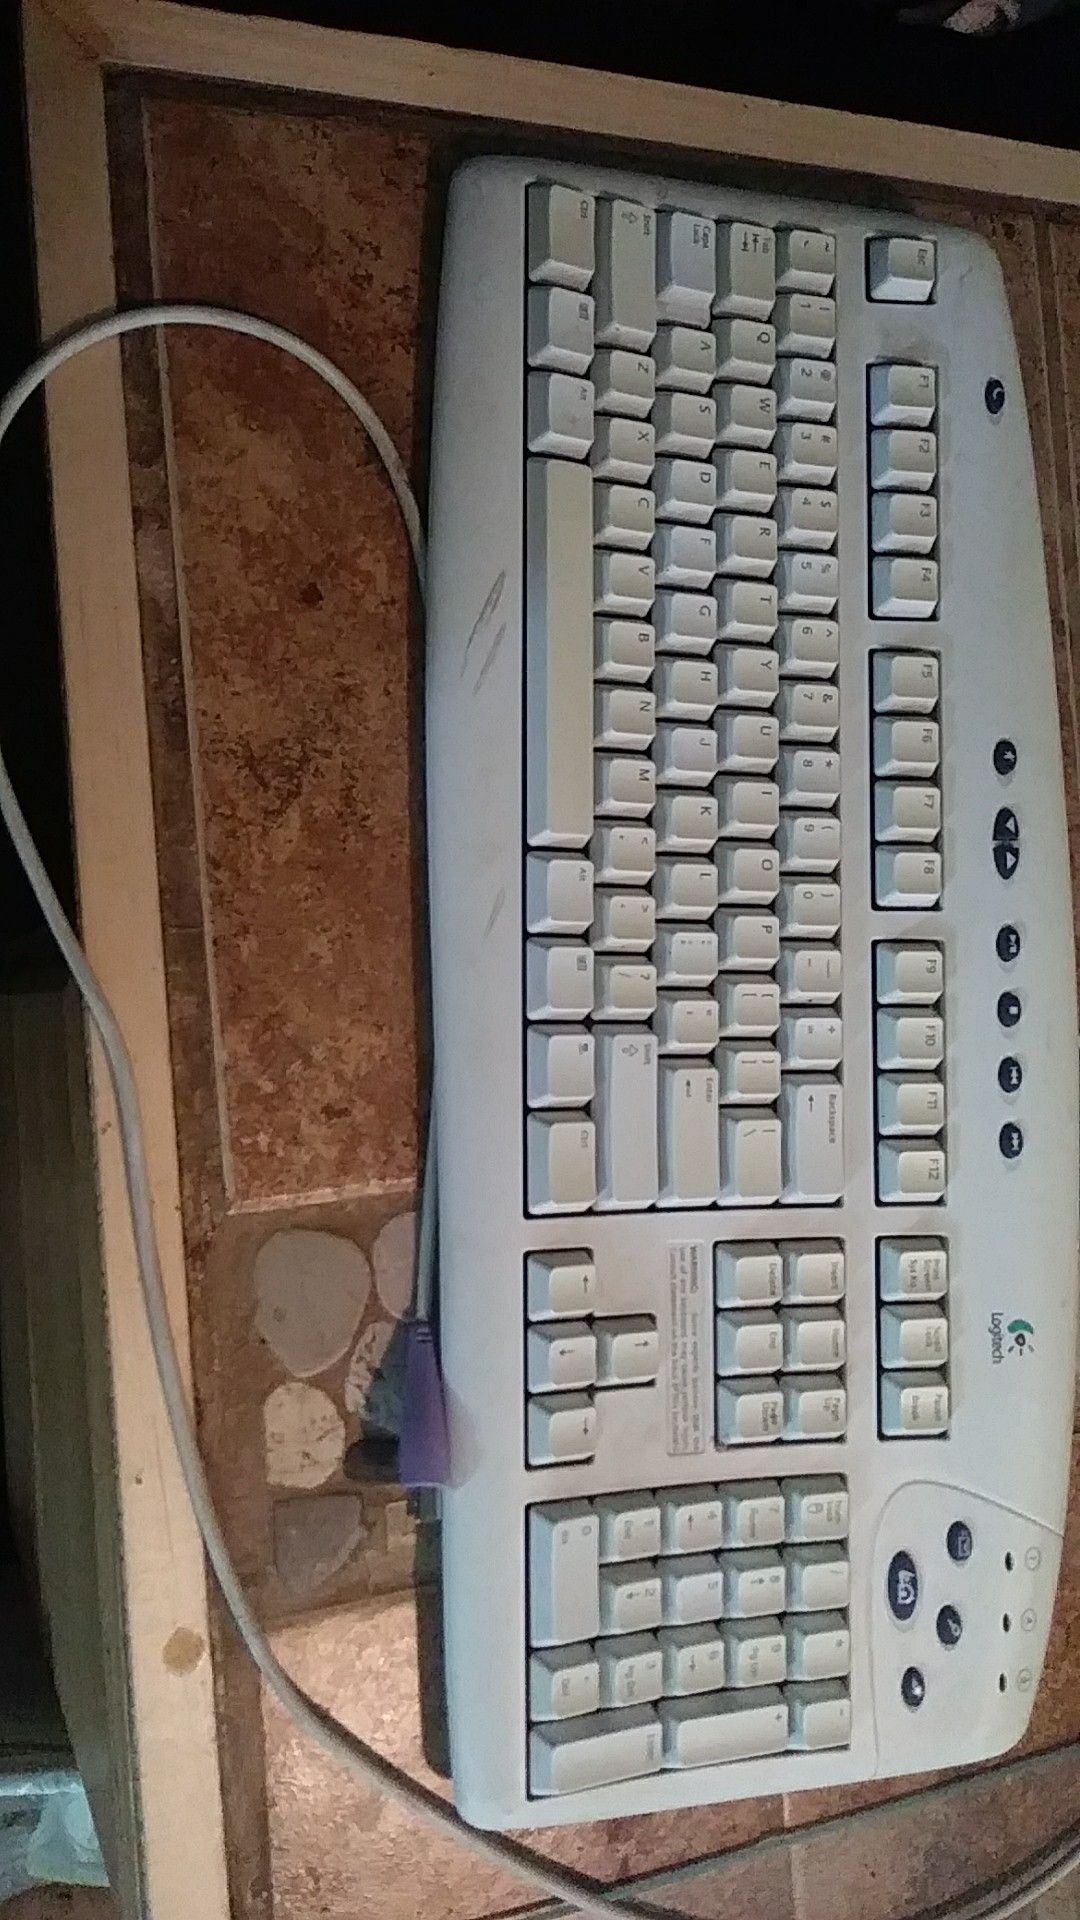 Logitech Corded Internet Keyboard